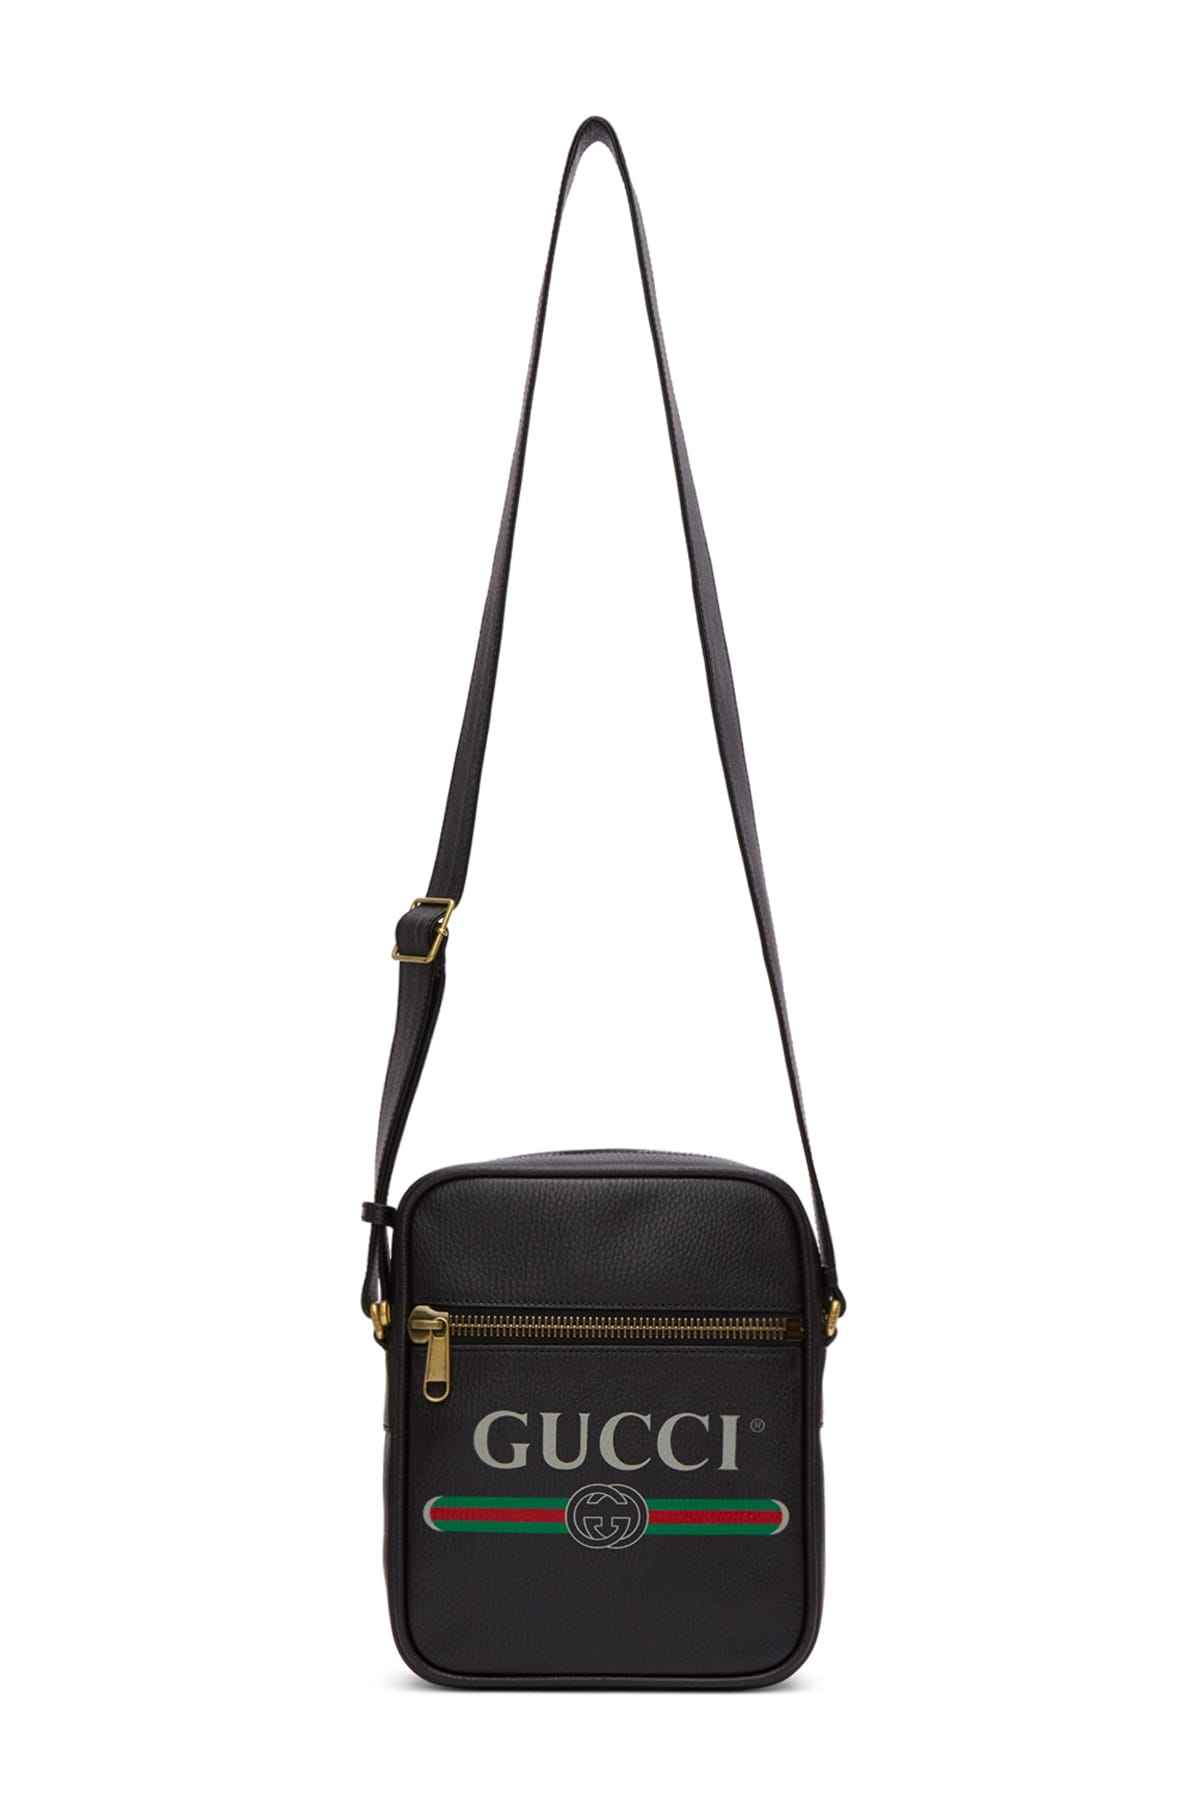 gucci funny bag